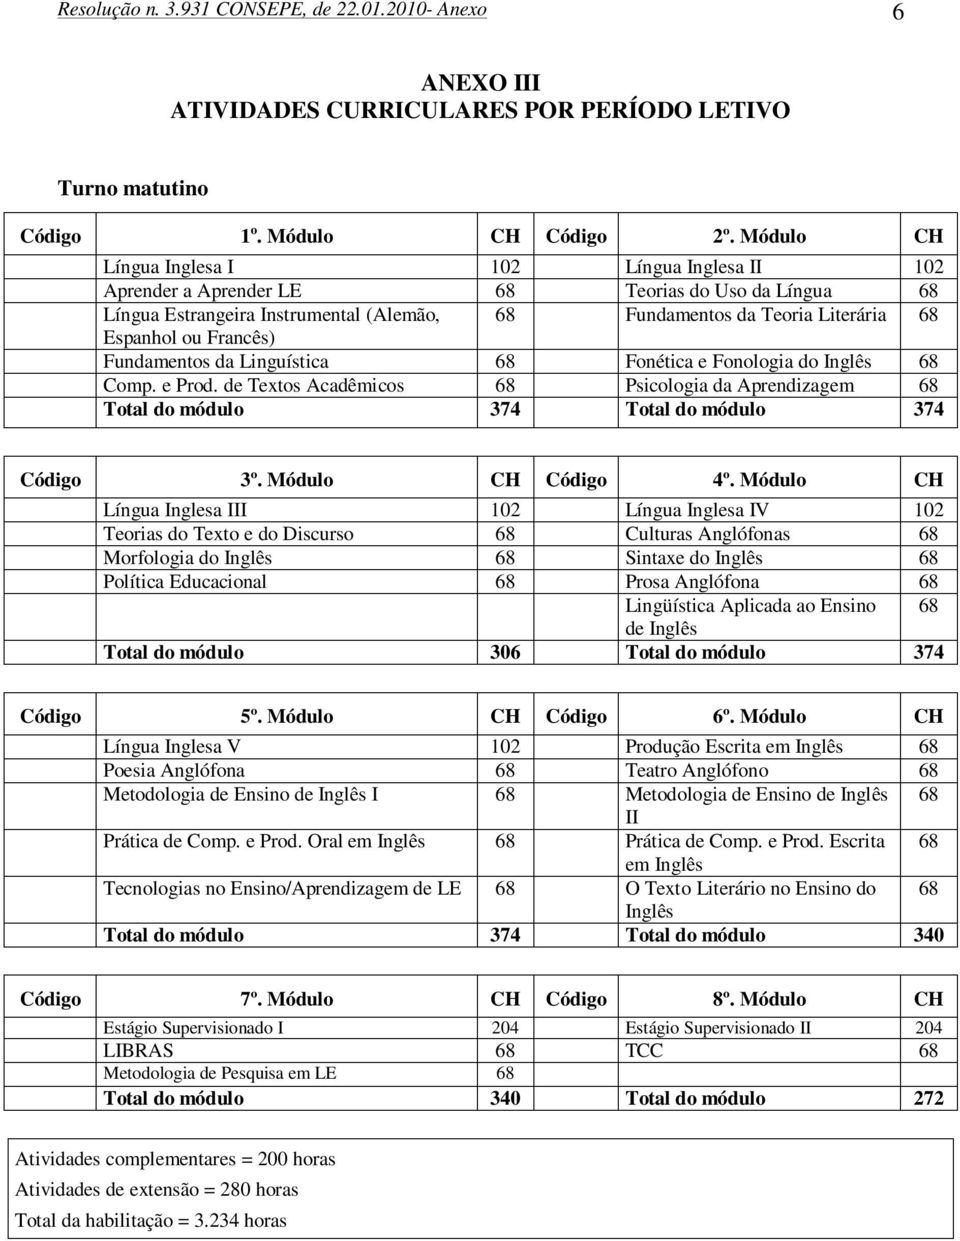 Francês) Fundamentos da Linguística 68 Fonética e Fonologia do Inglês 68 Comp. e Prod. de Textos Acadêmicos 68 Psicologia da Aprendizagem 68 Total do módulo 374 Total do módulo 374 Código 3º.